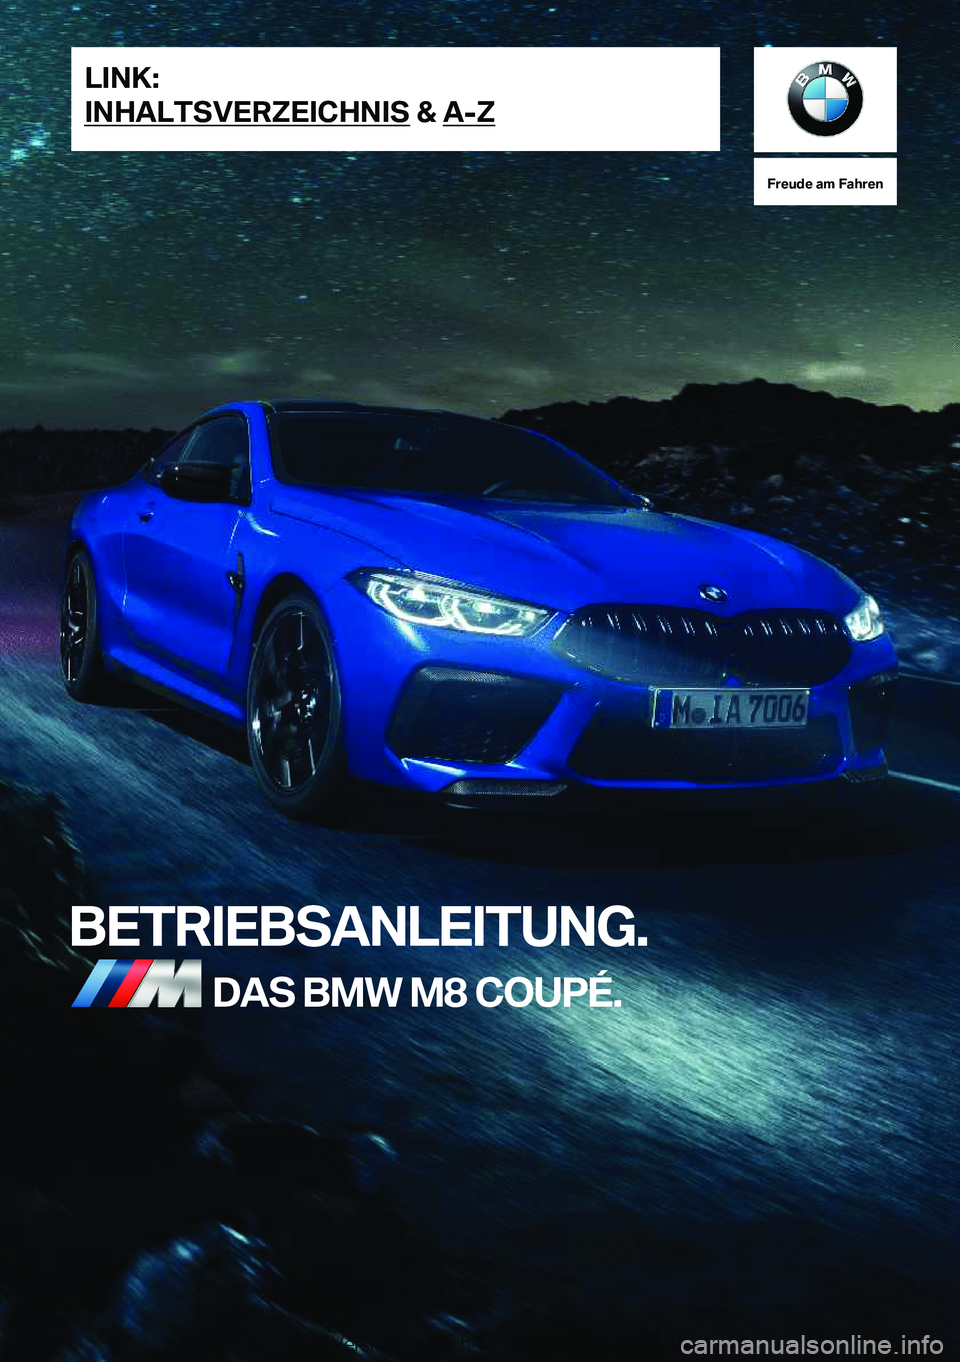 BMW M8 2020  Betriebsanleitungen (in German) �F�r�e�u�d�e��a�m��F�a�h�r�e�n
�B�E�T�R�I�E�B�S�A�N�L�E�I�T�U�N�G�.�D�A�S��B�M�W��M�8��C�O�U�P�